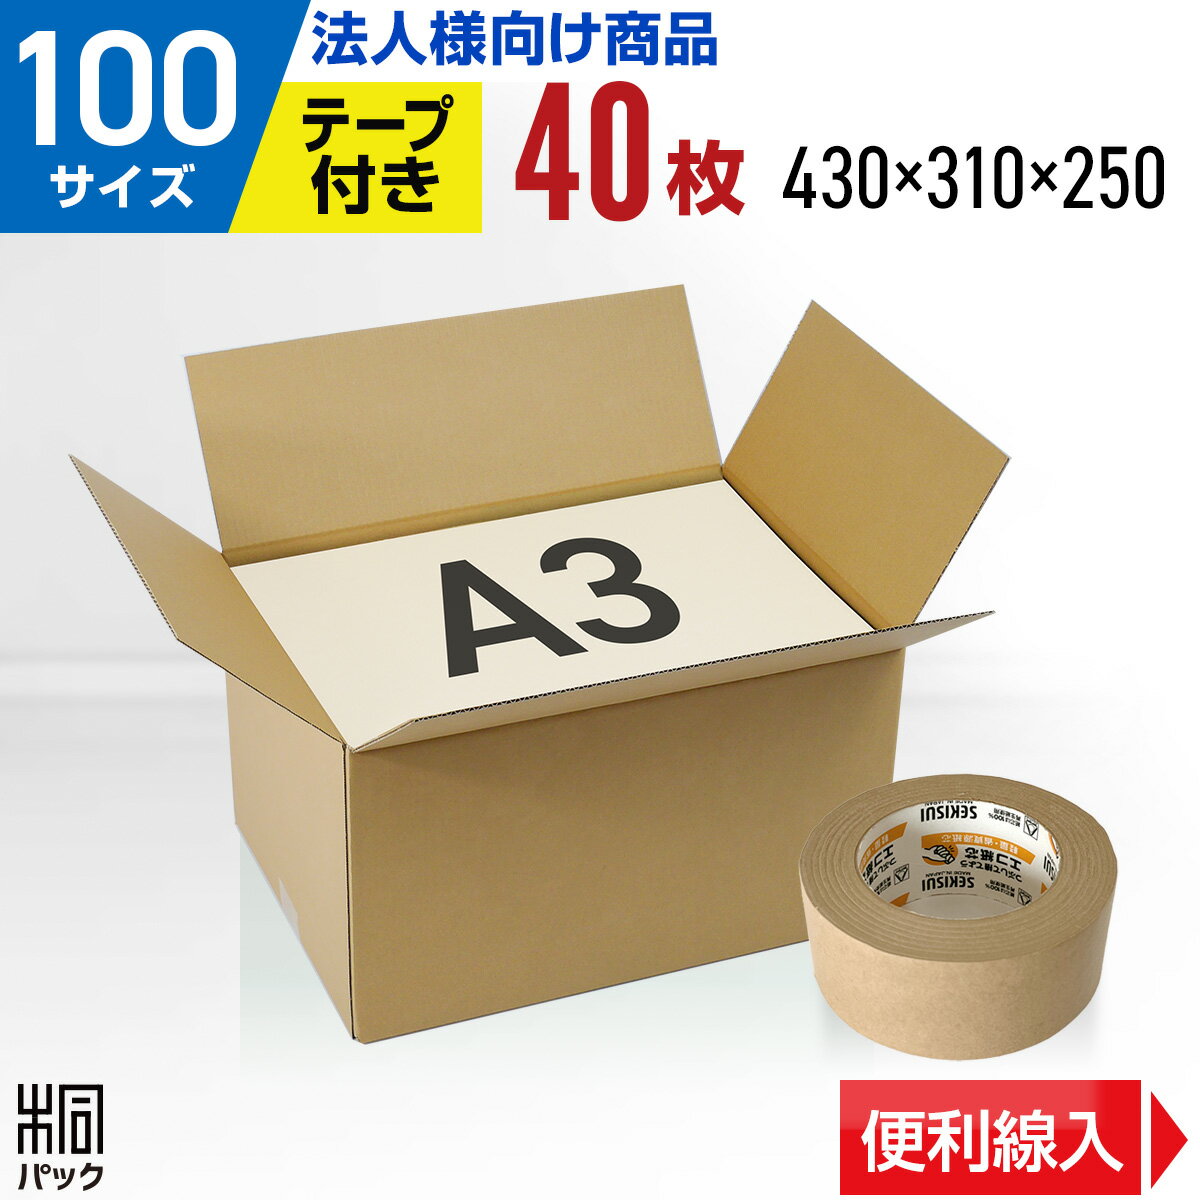 【法人特価】段ボール 箱 100サイズ A3 便利線入り 4